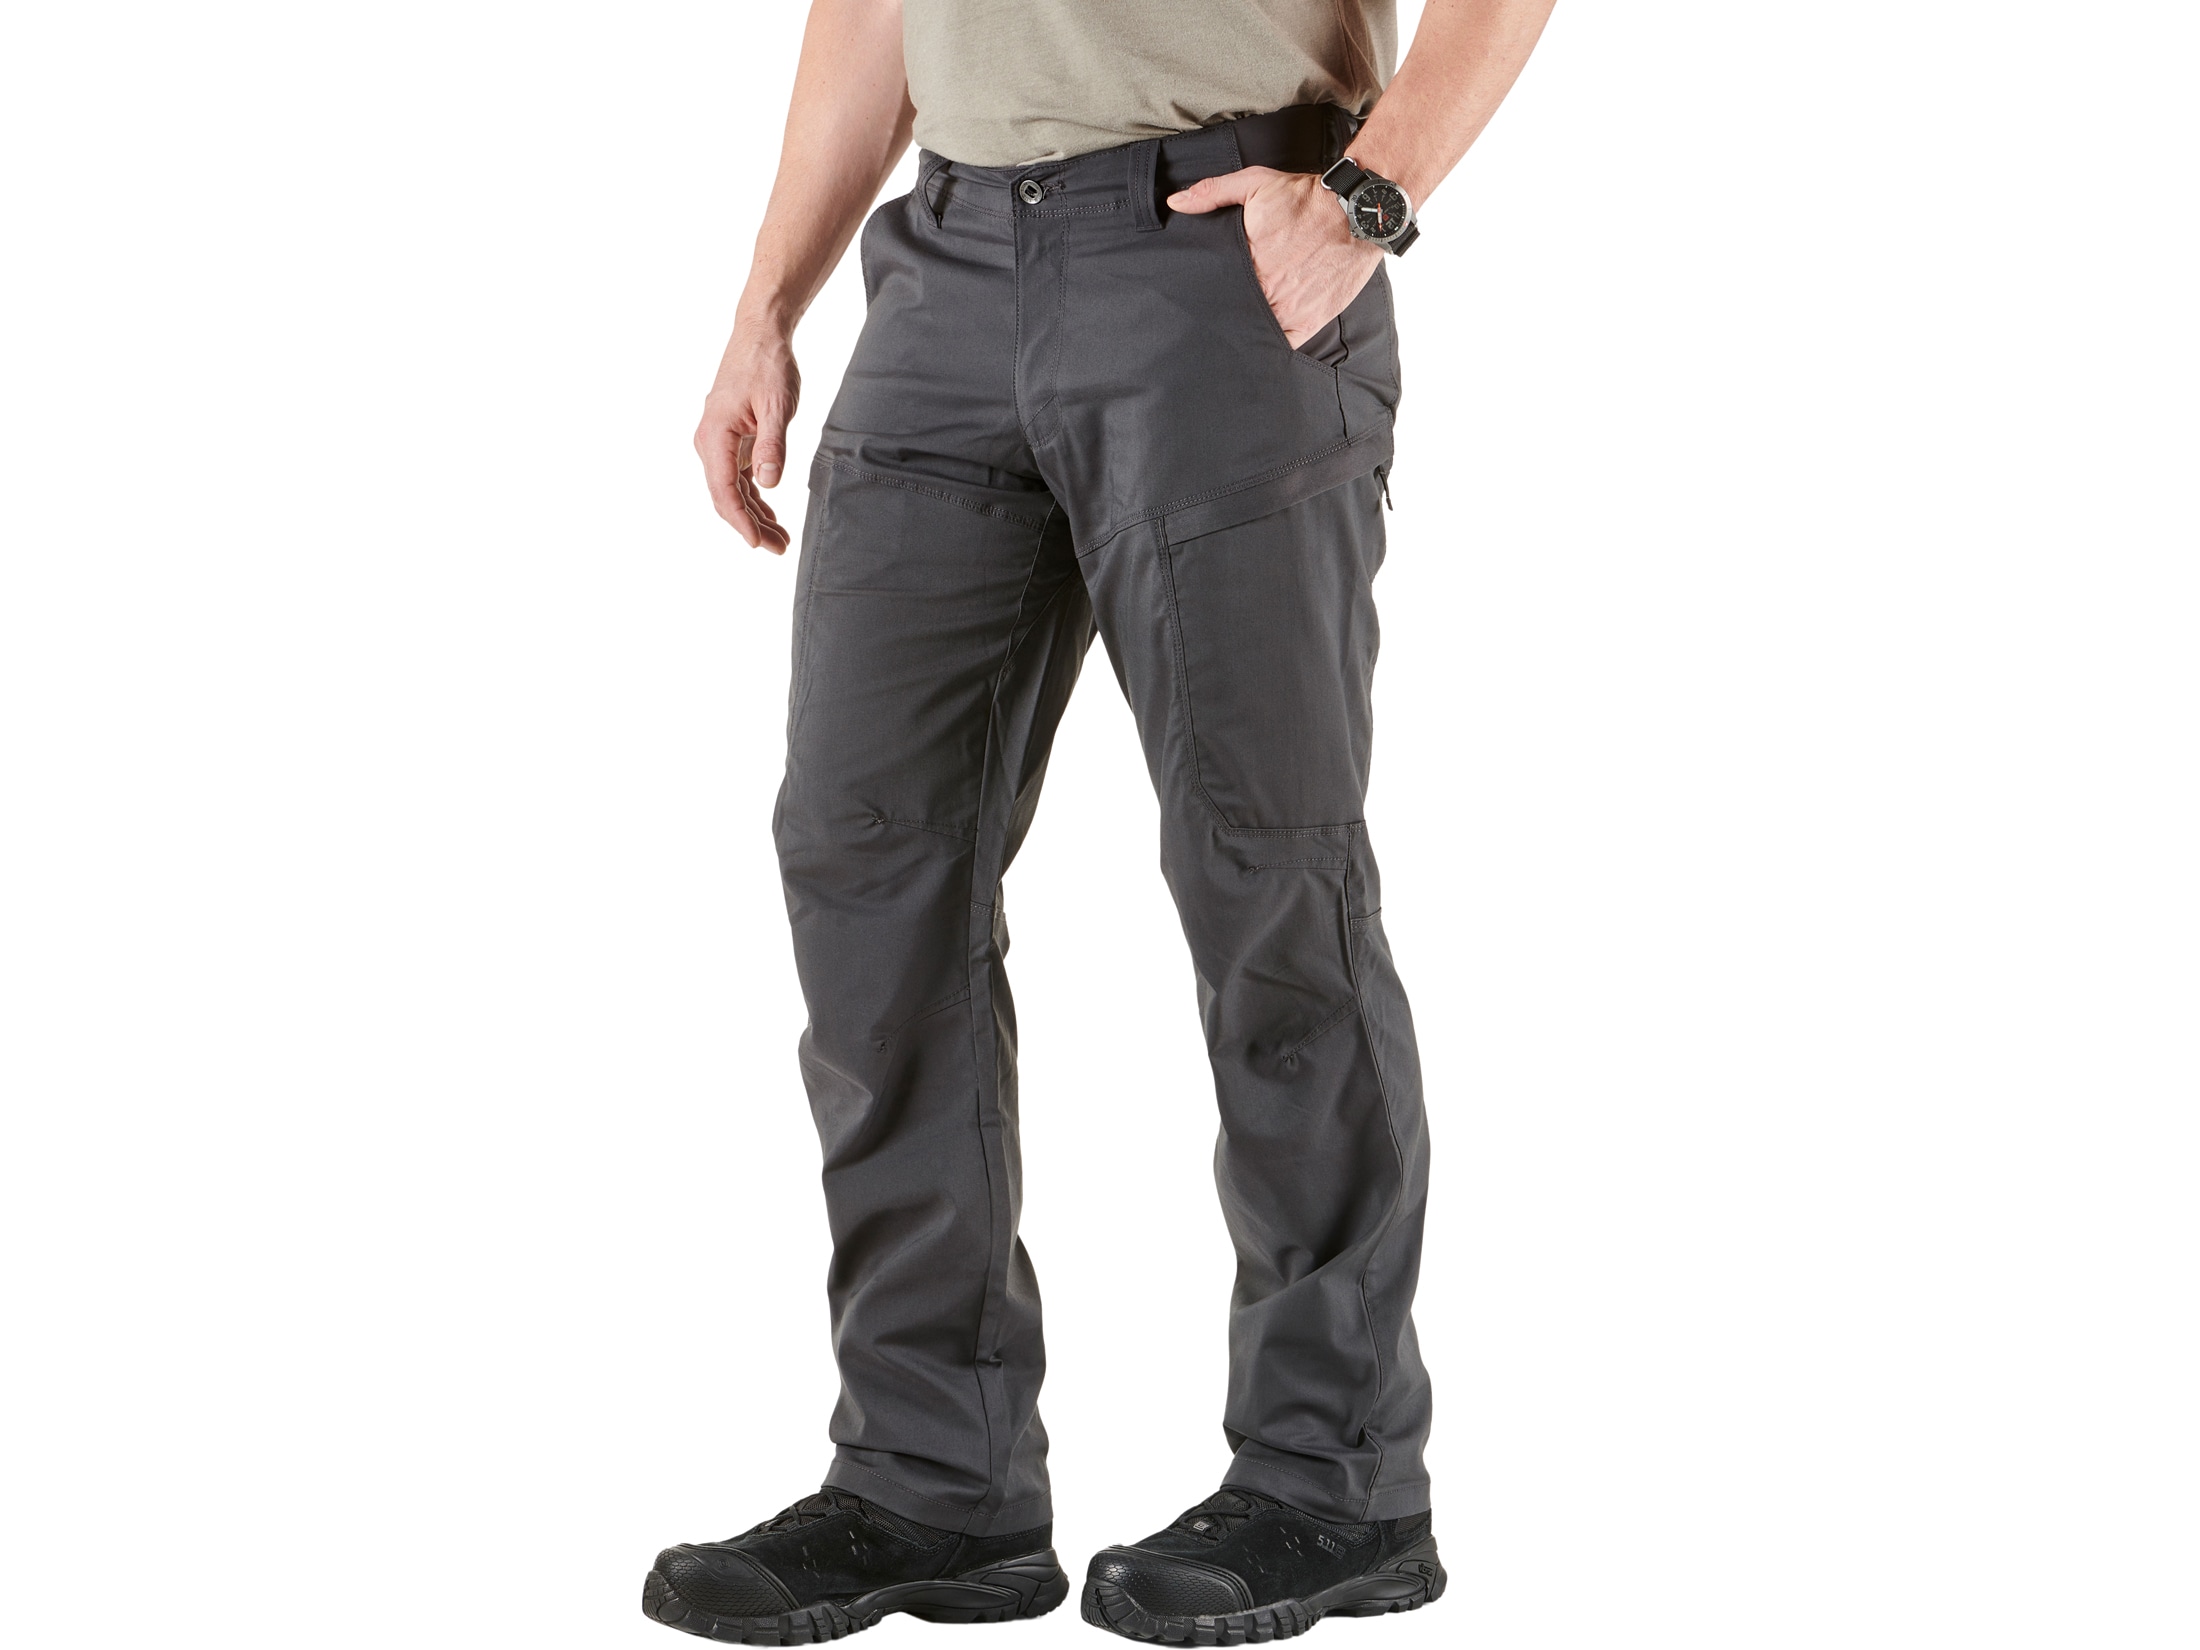 5.11 Men's Apex Tactical Pants Flex-Tac Ripstop Polyester/Cotton Storm